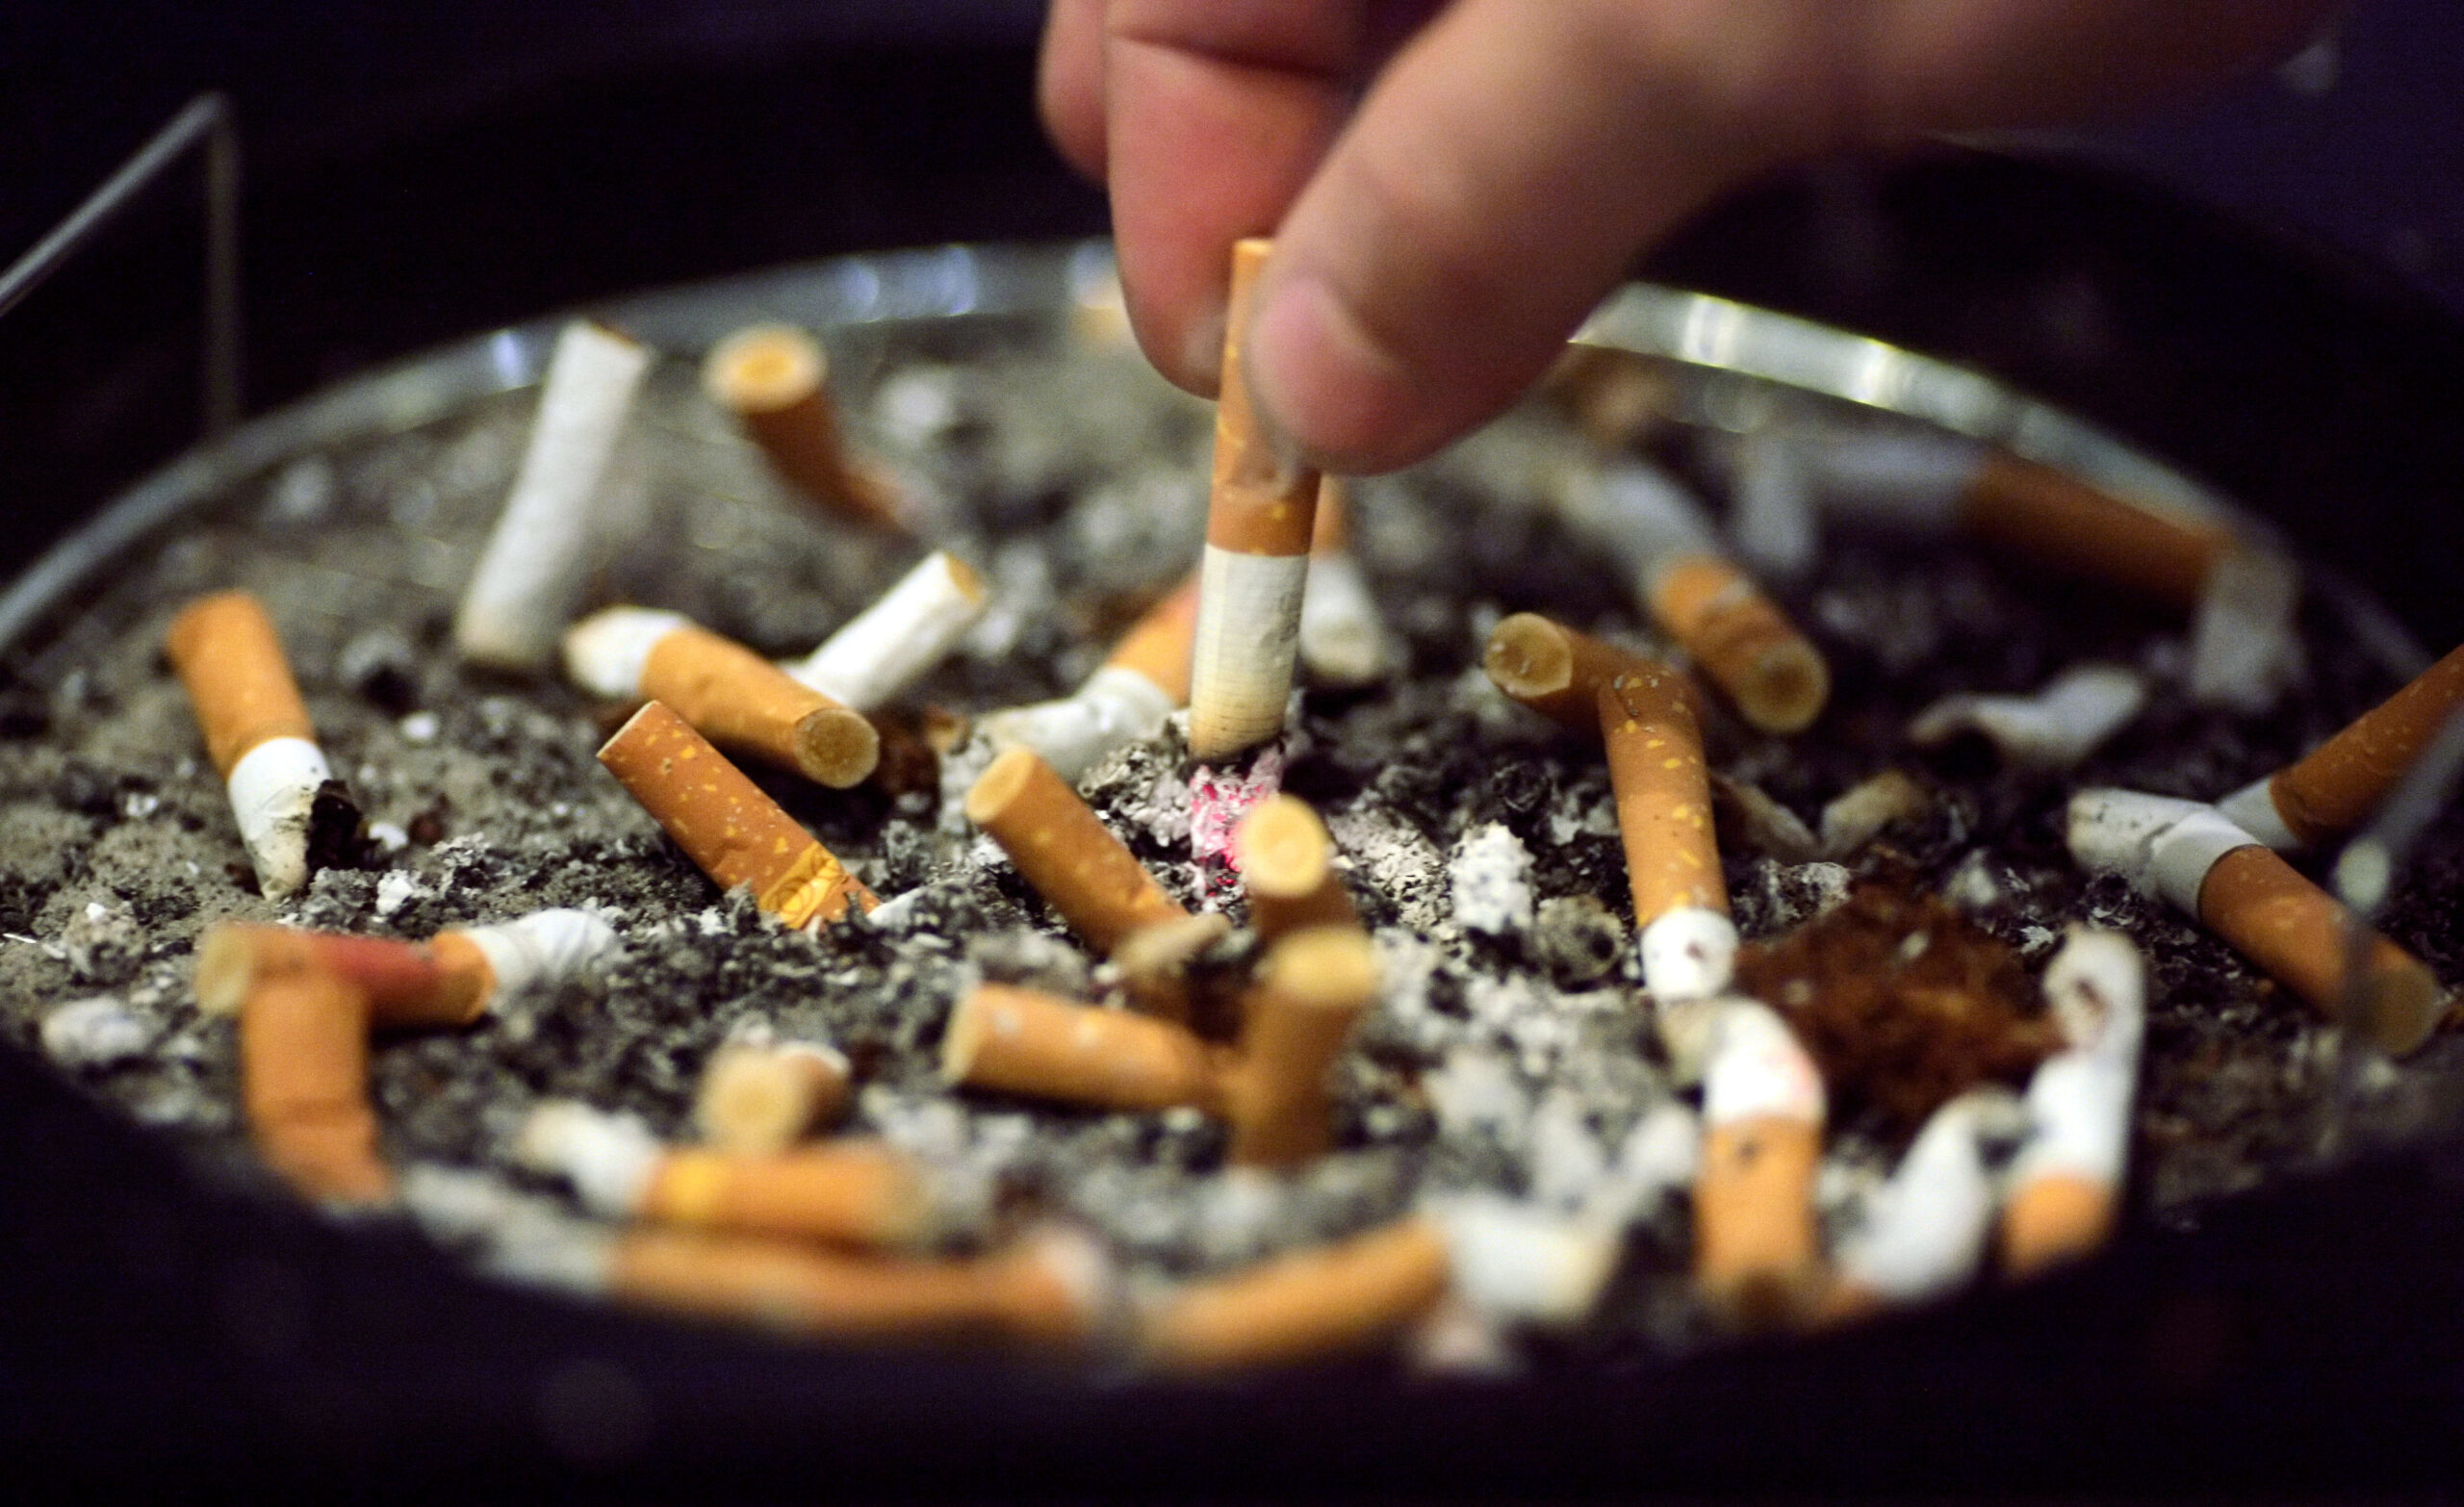 Endlich aufhören mit dem Rauchen: Ein Experte verrät, wie das klappt.